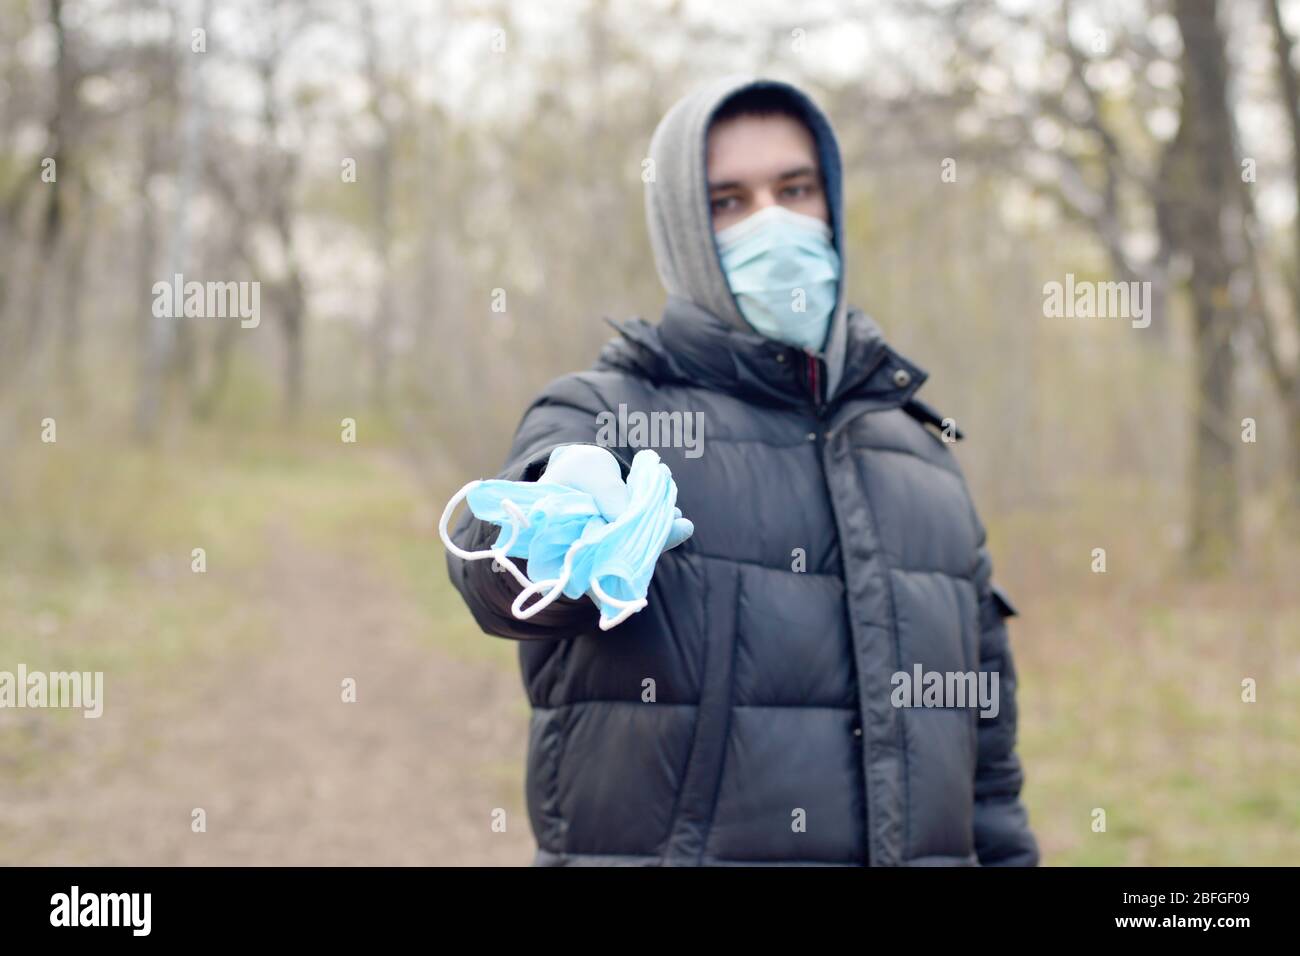 Le jeune homme dans le masque de protection montre un groupe de masques de protection du visage à l'extérieur dans le bois de printemps. Concept d'utilisation de produits de protection pendant la quarantaine Banque D'Images